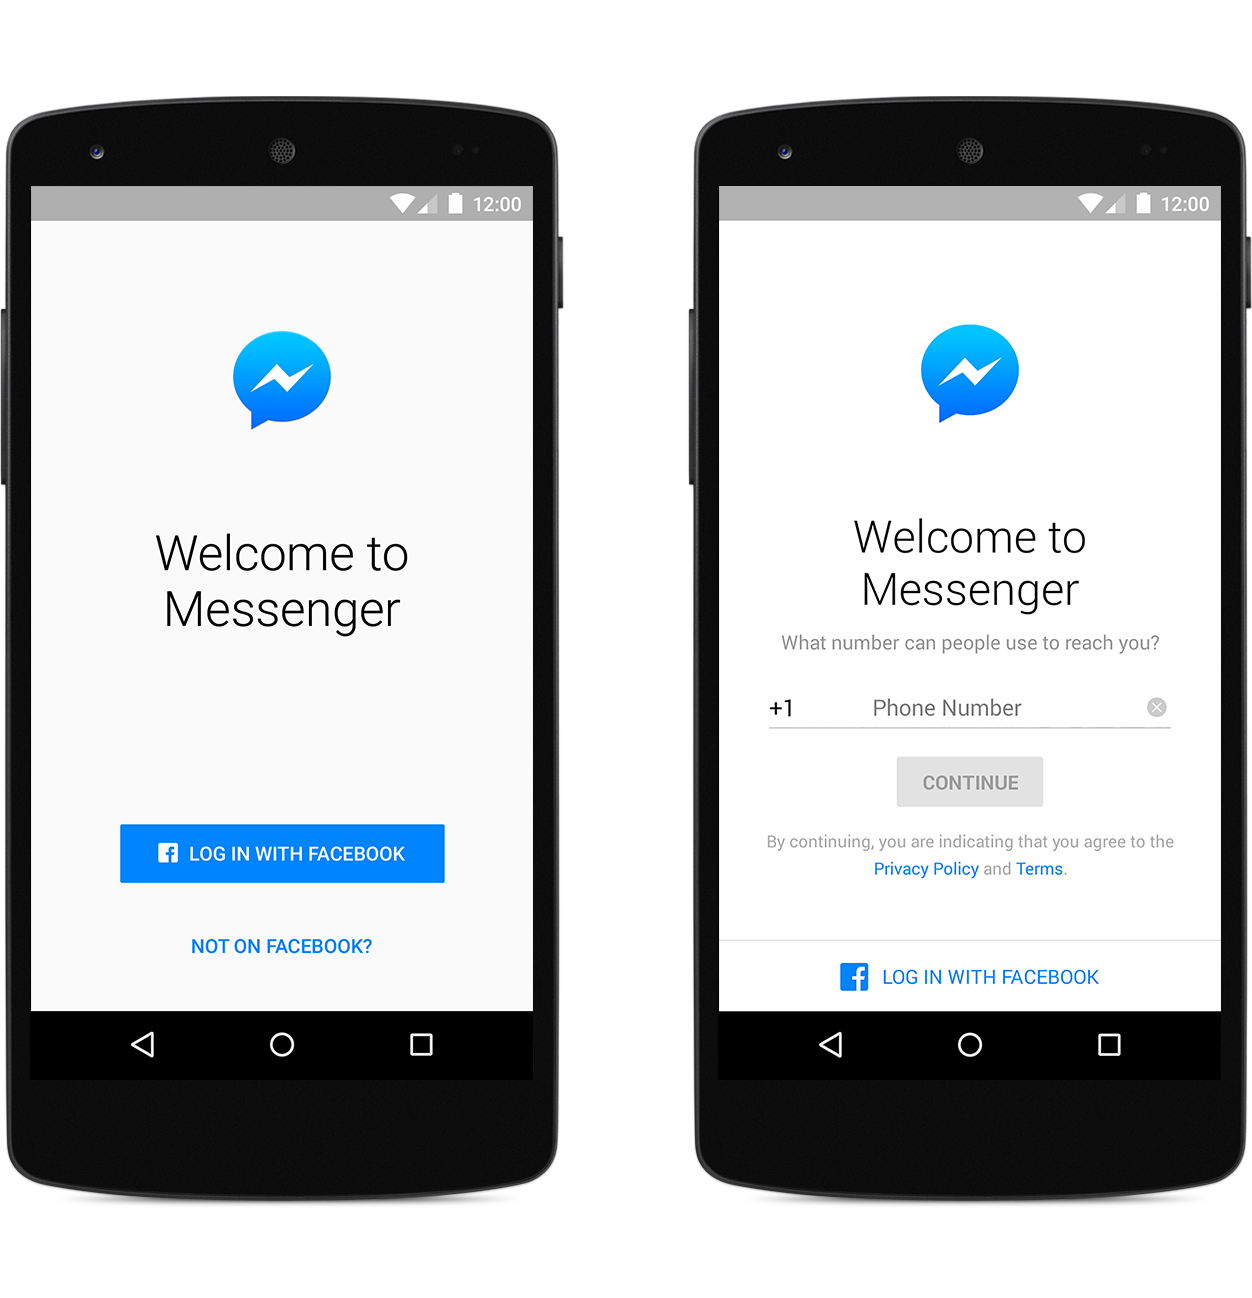 Facebookアカウントを持っていなくても｢Messenger｣が利用可能に − まずは北米など一部の国から